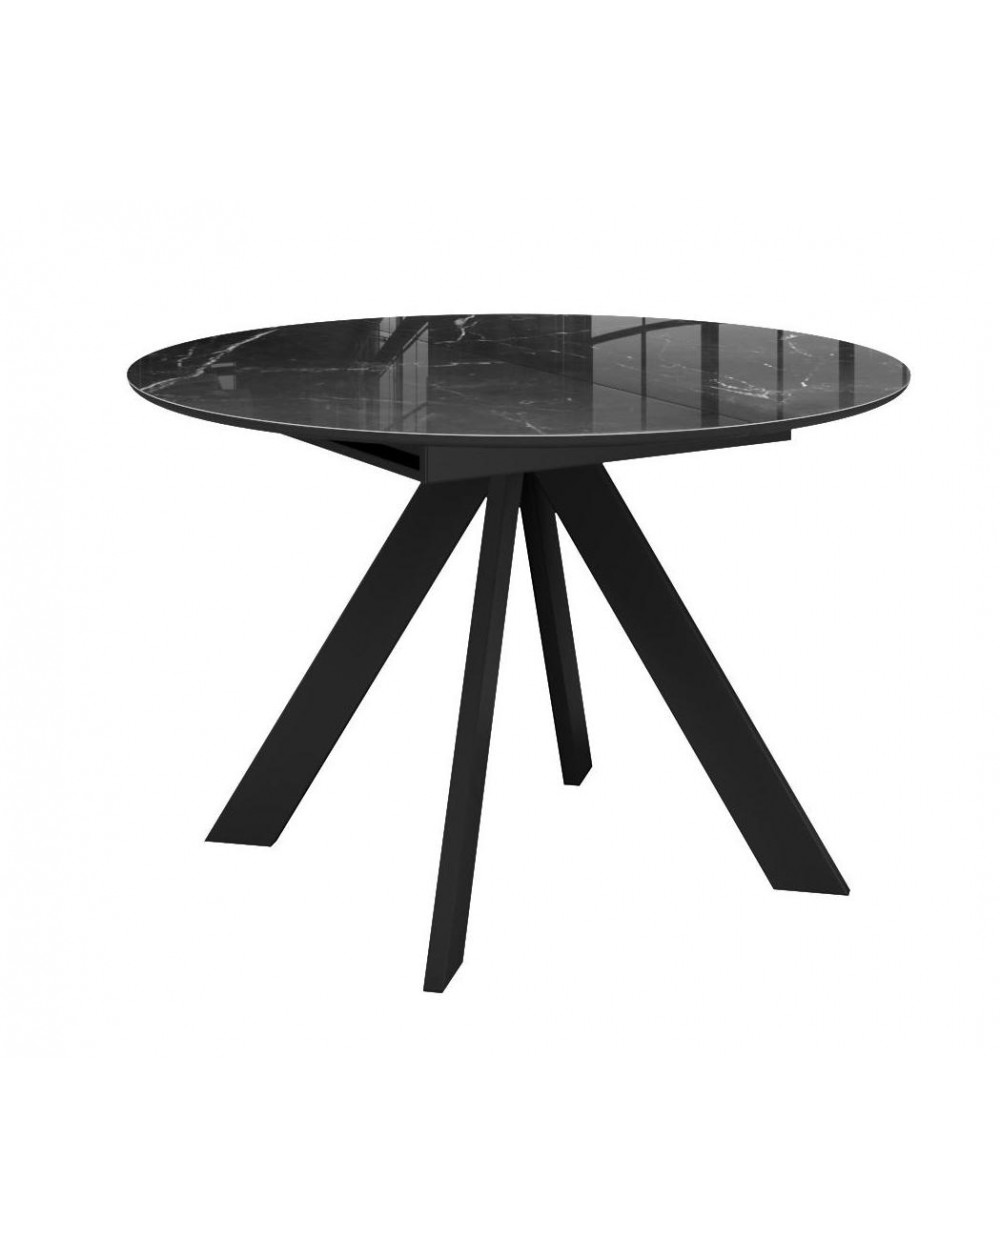 Стол SFC100 d1000 стекло Оптивайт Черный мрамор/подстолье черное фото Stolmag